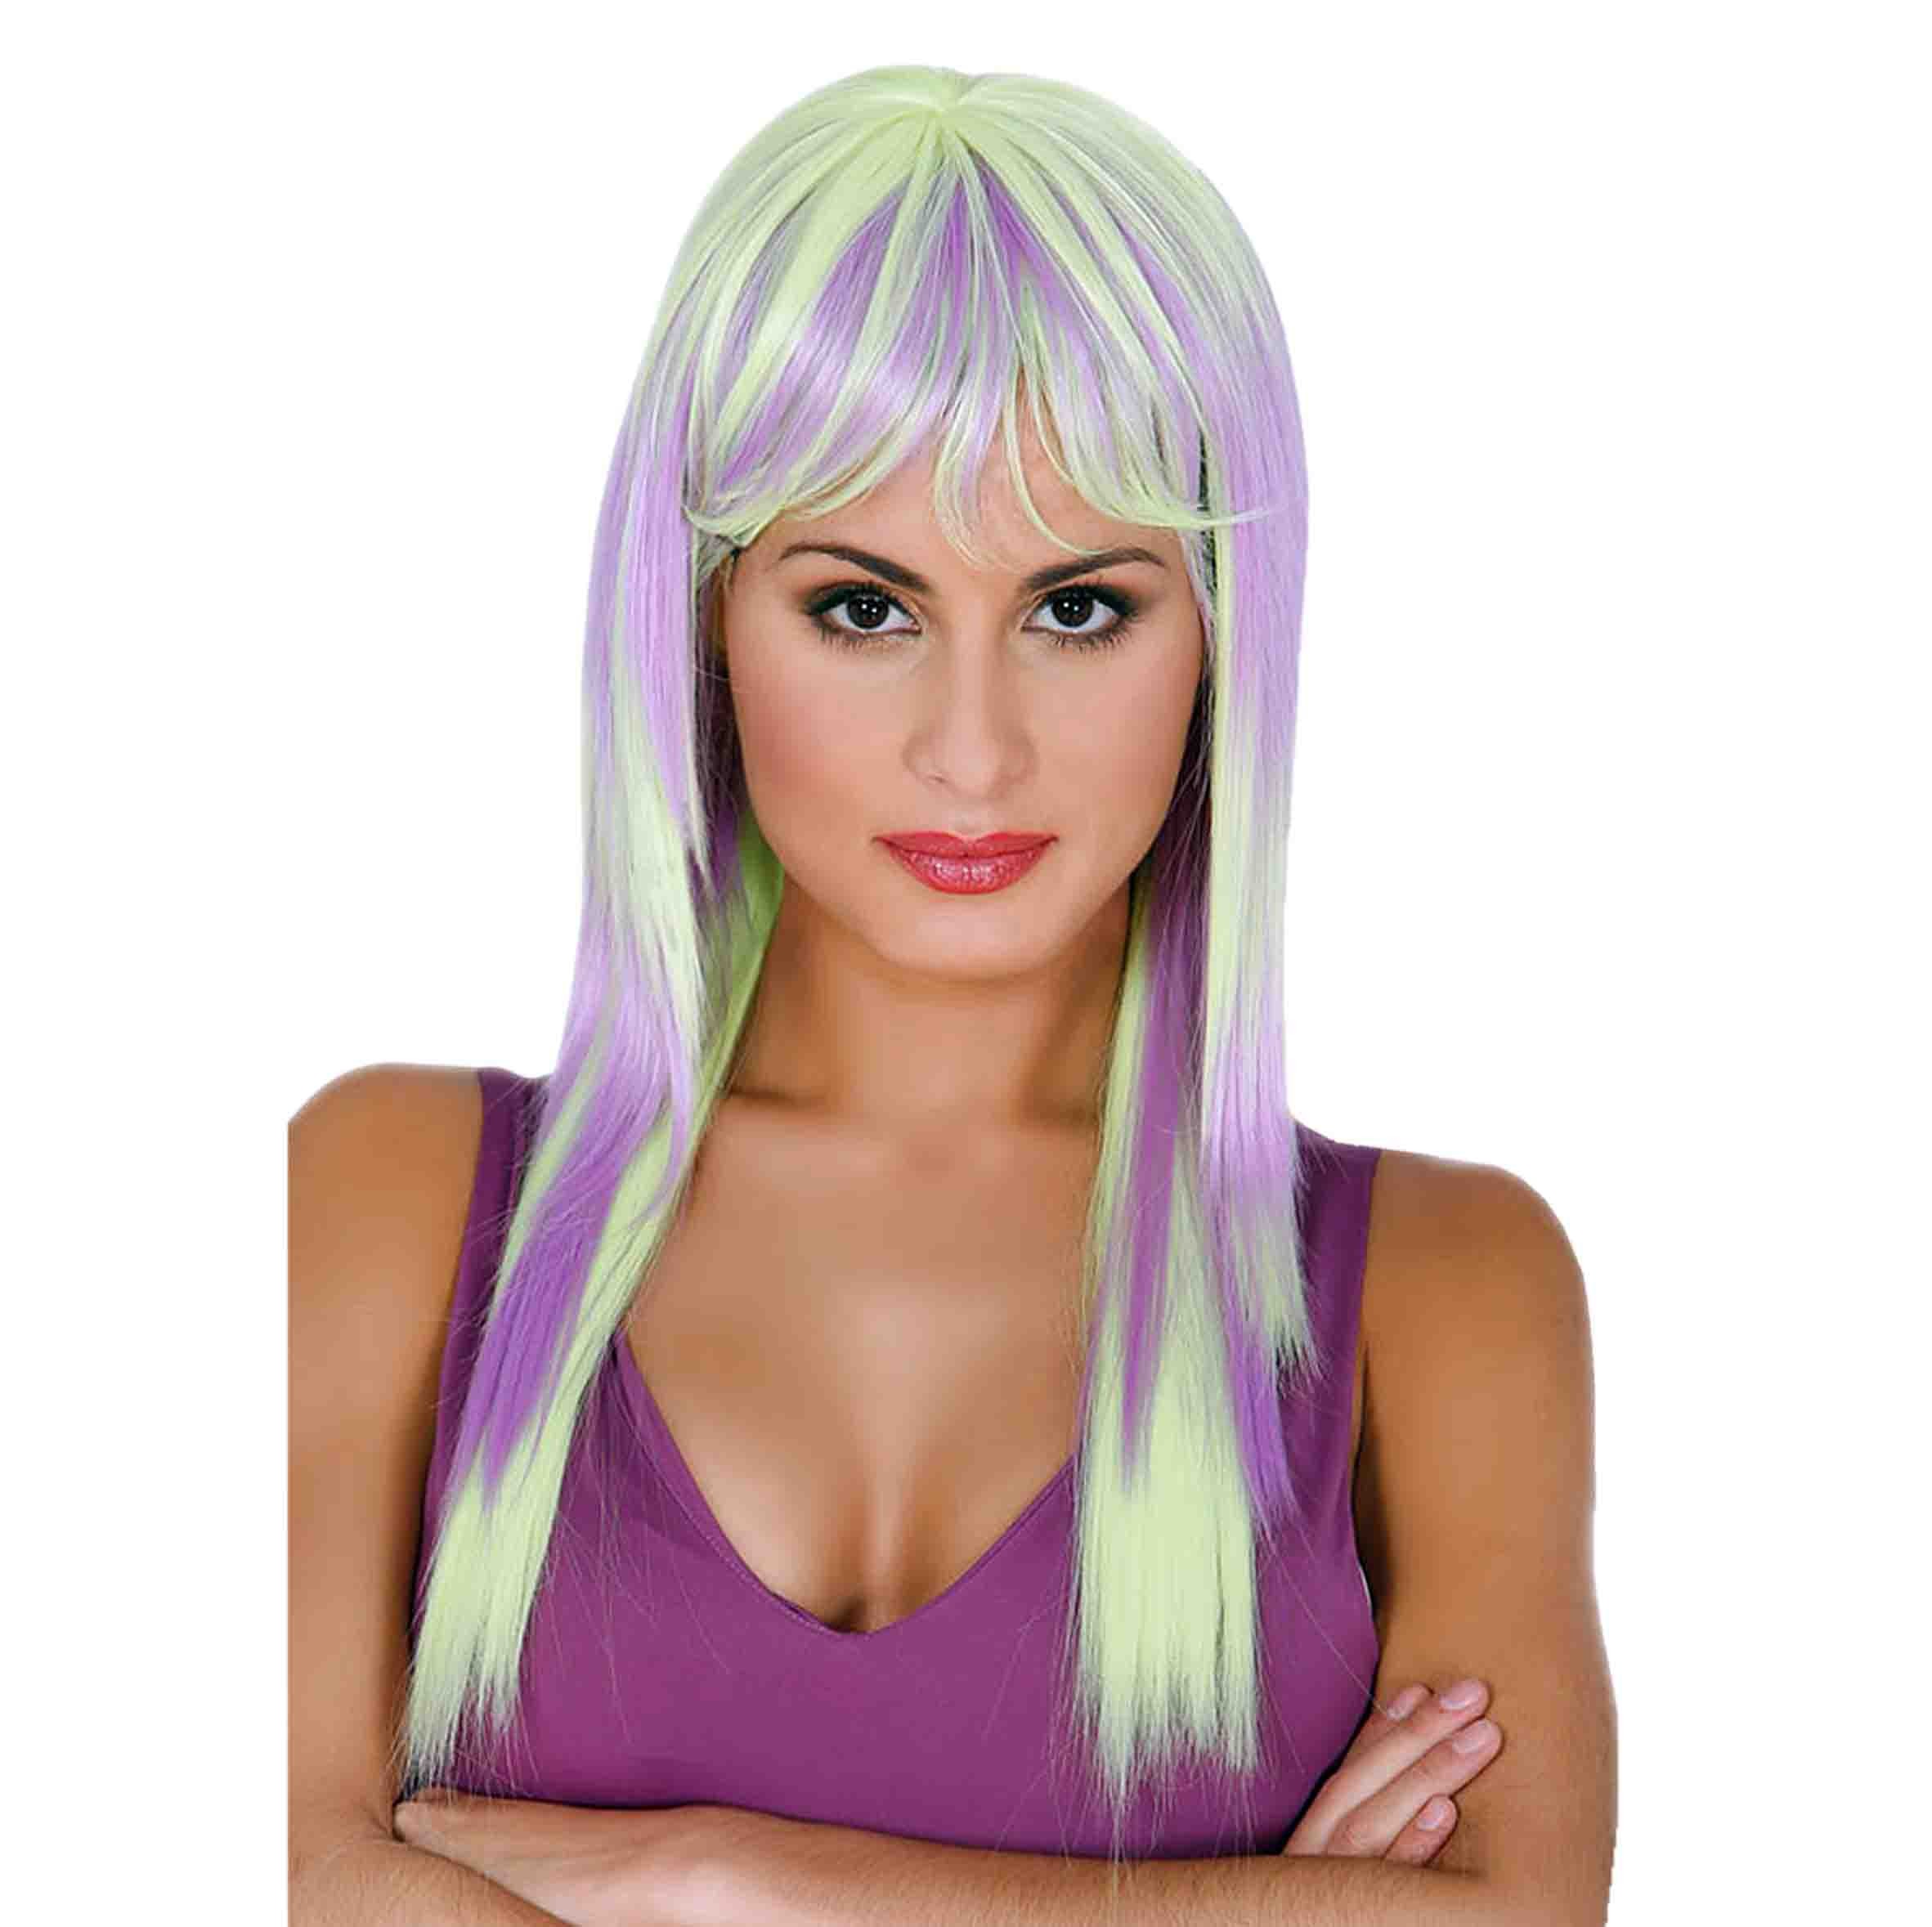 IMISSU 80cm Parrucca cosplay capelli lunghi ricci naturali con frangia Parrucche colorate per feste in costume di Halloween per le donne Arancio Fluorescente 